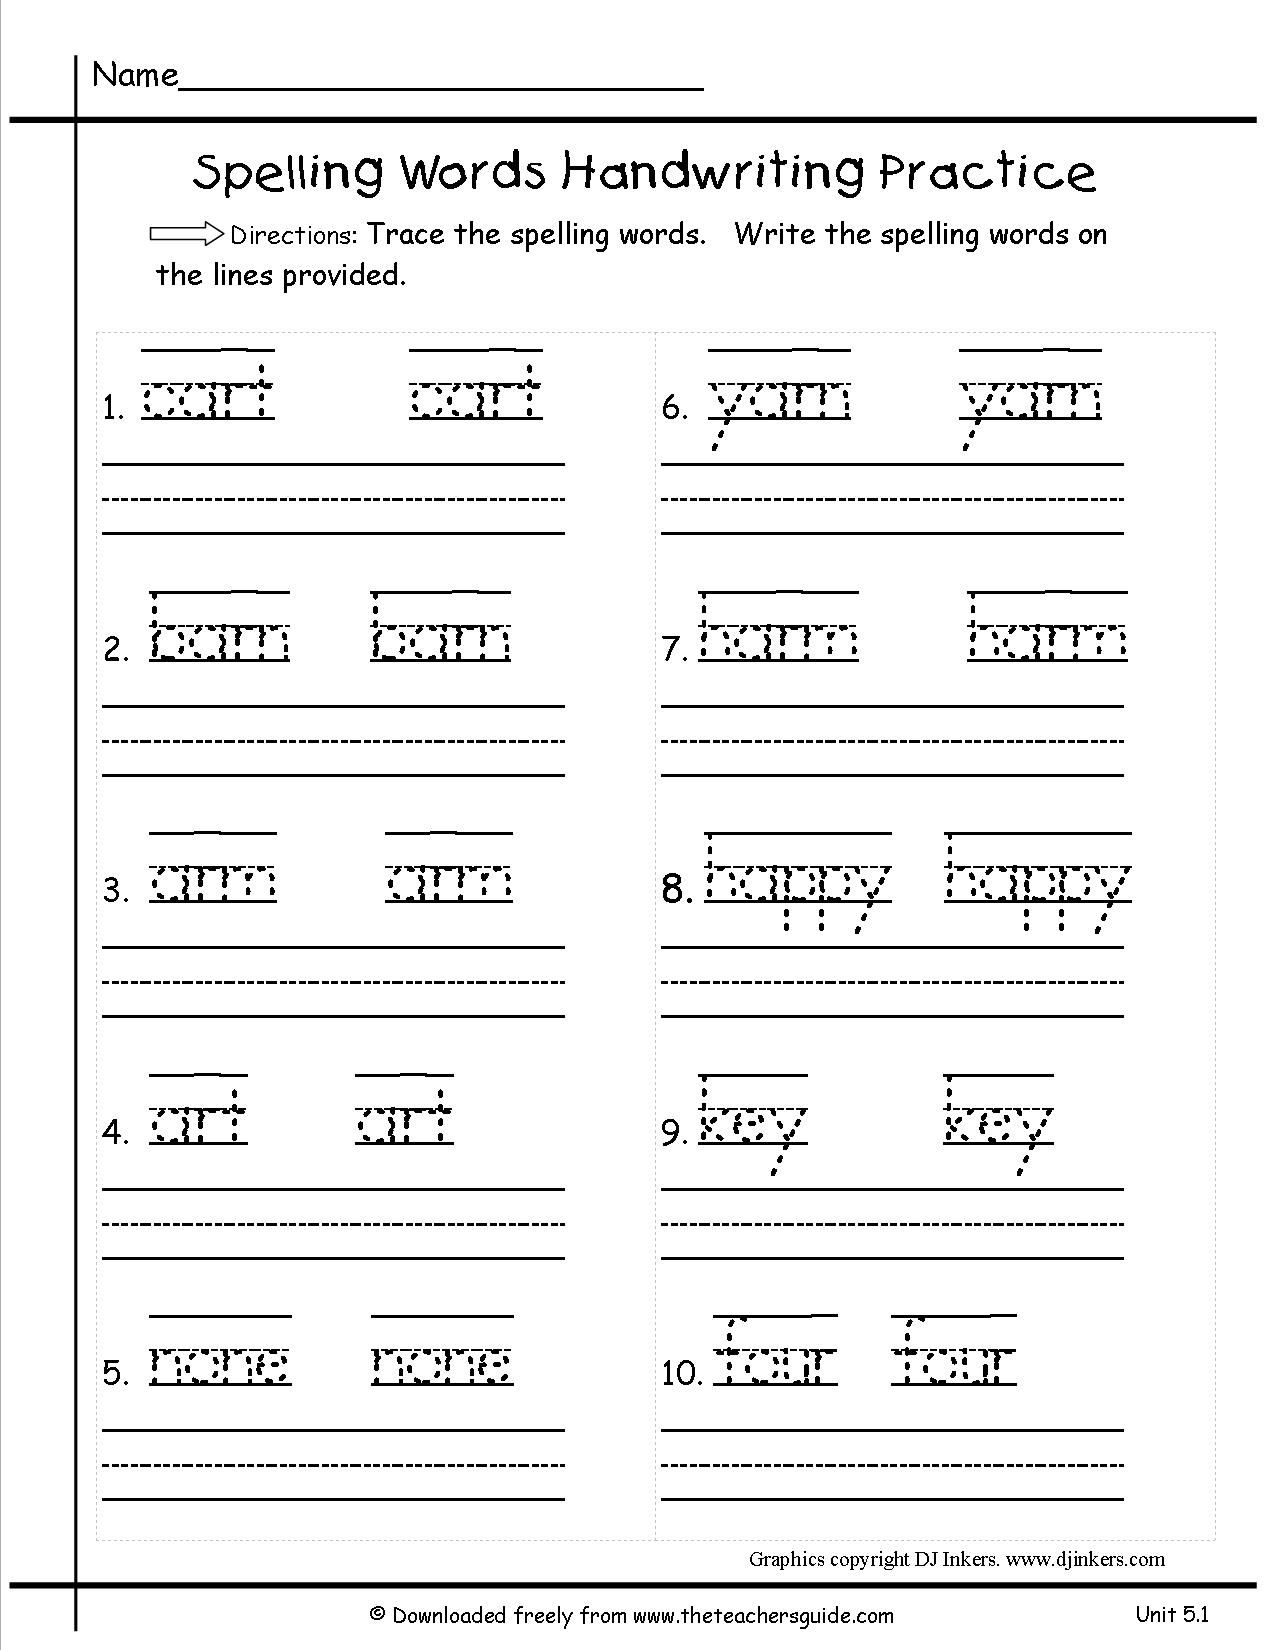 Handwriting Spelling Grade 1 Worksheets